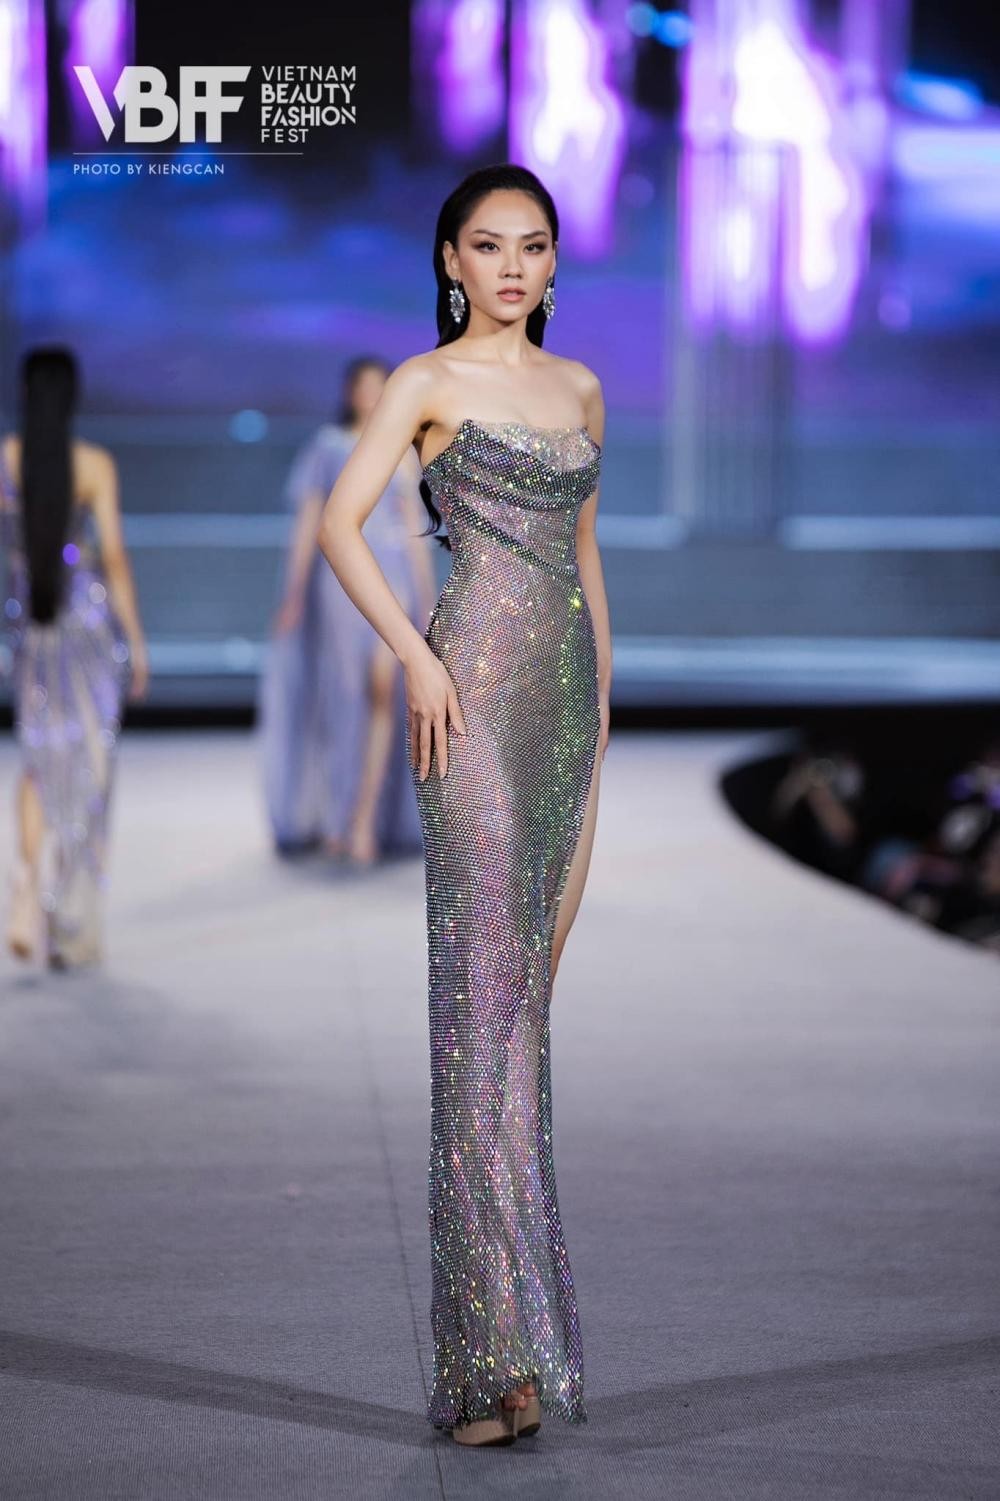 Hoa hậu Mai Phương cực khéo chọn đầm dạ hội, thiết kế nào cũng tôn dáng tuyệt đối ảnh 4